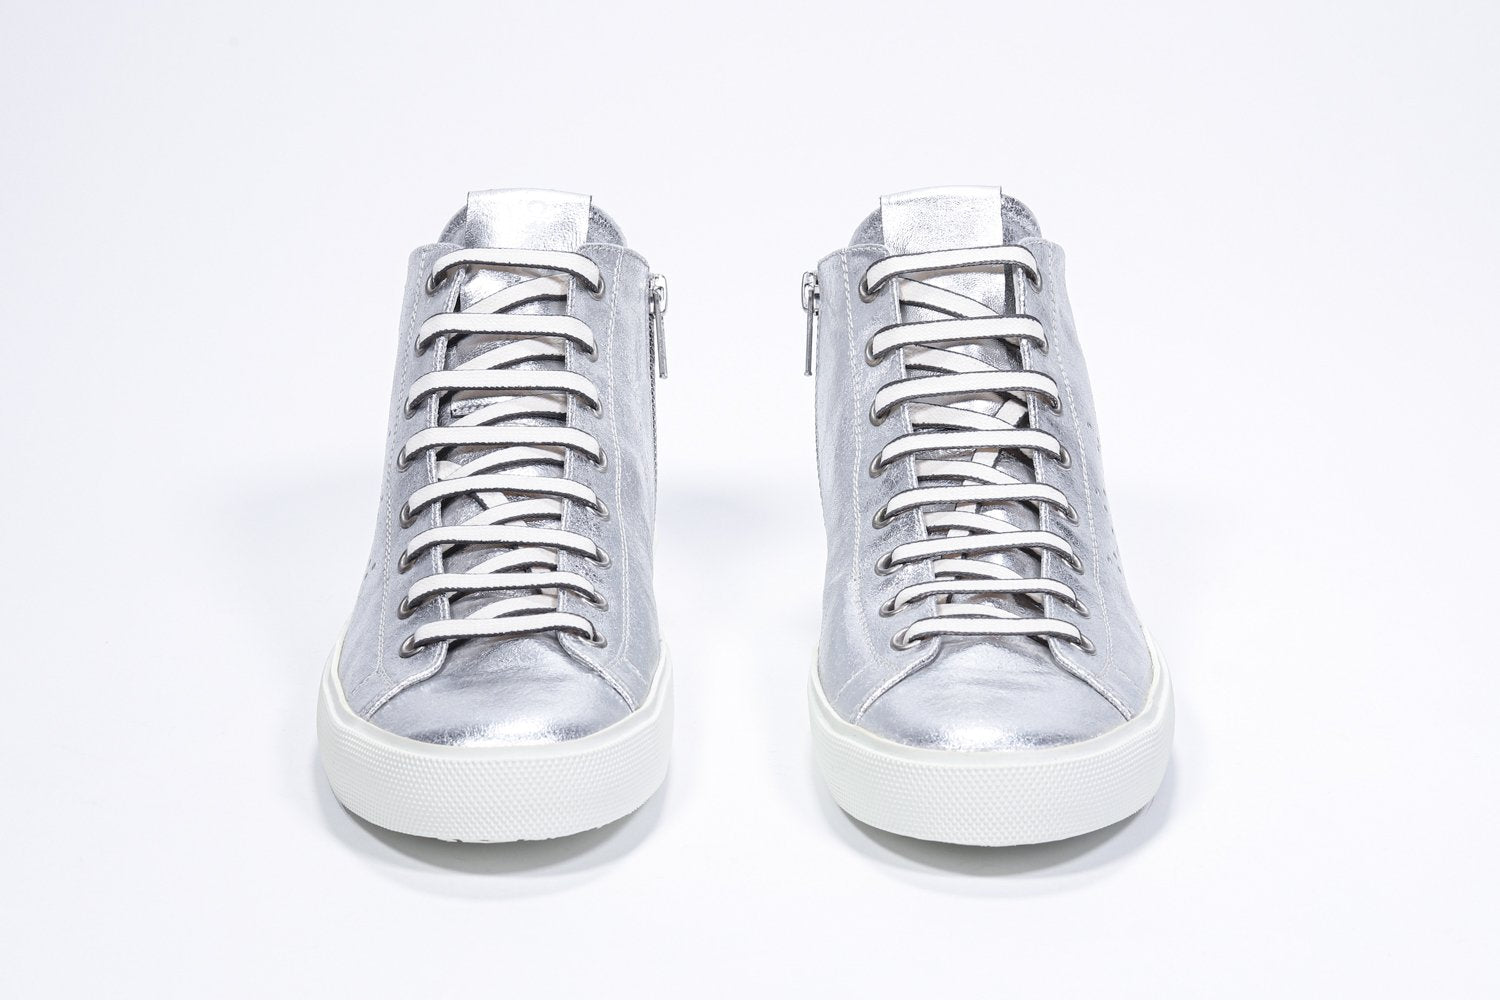 Vorderansicht des silbernen Mid-Top sneaker mit Volllederoberteil mit perforiertem Kronenlogo, Innenreißverschluss und weißer Sohle.